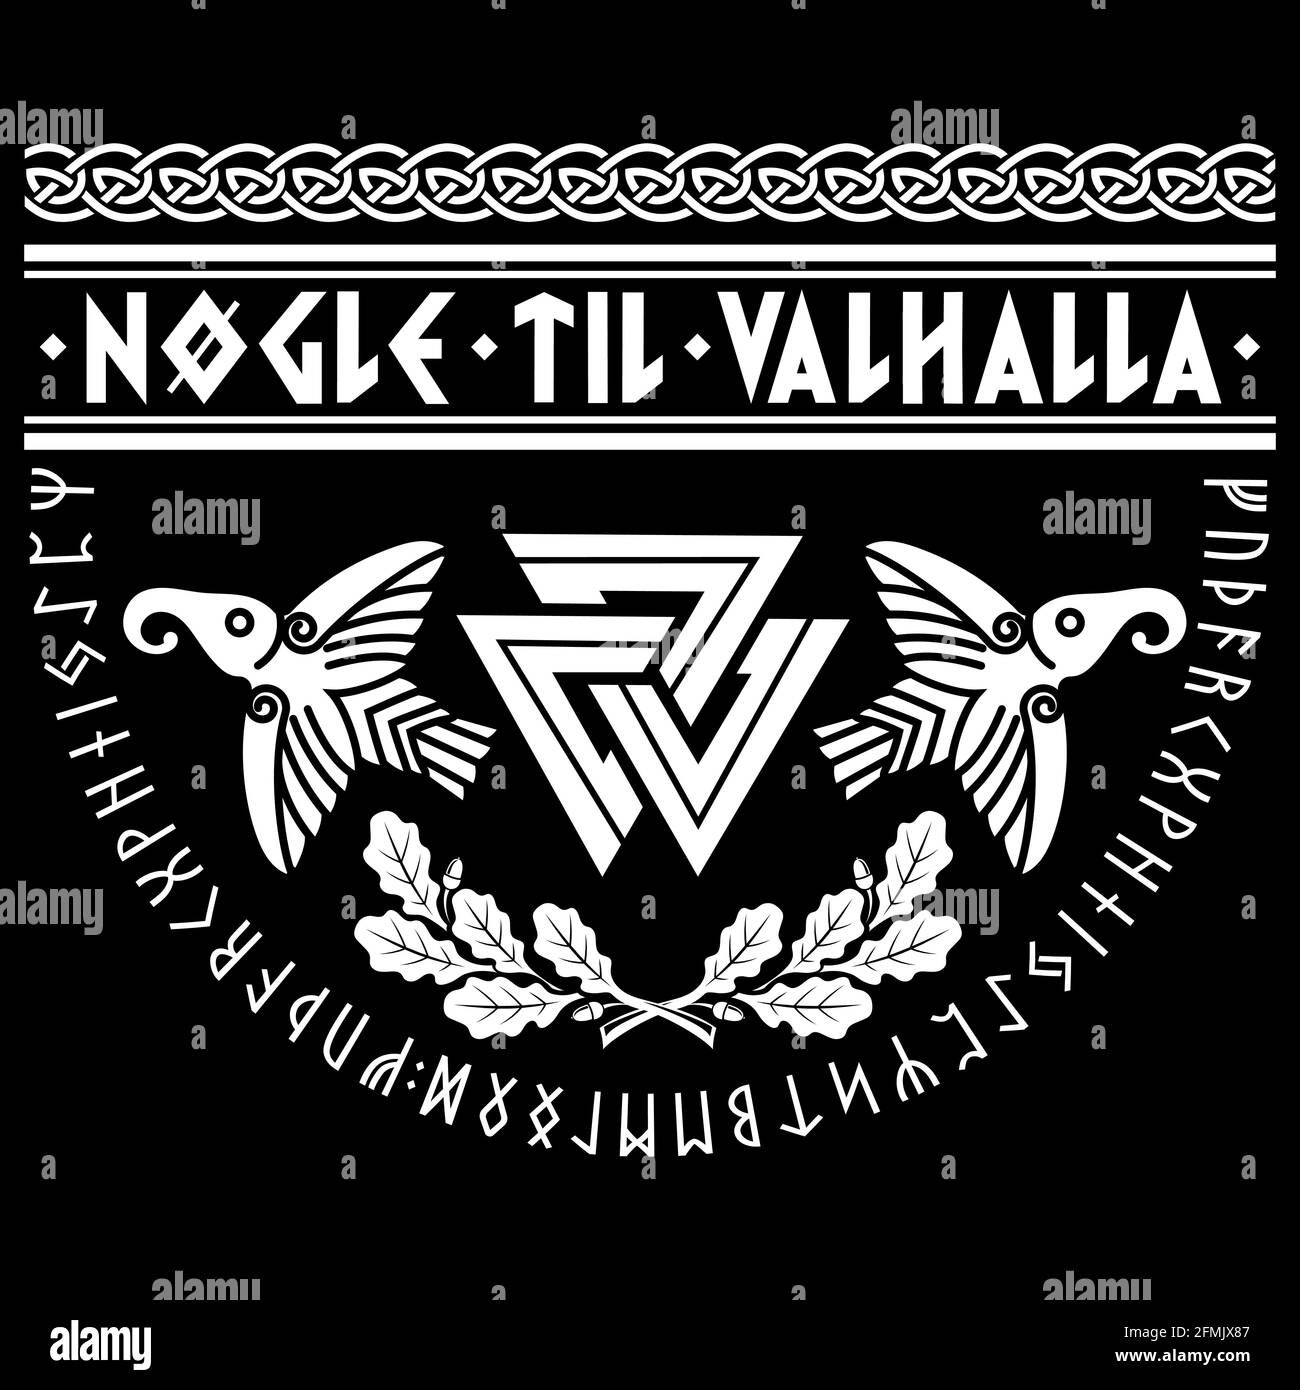 Valknut antico simbolo pagano nordico germanico, antiche rune scandinave, slogan vichingo - le chiavi di Valhalla, foglie di quercia e due corvi Illustrazione Vettoriale